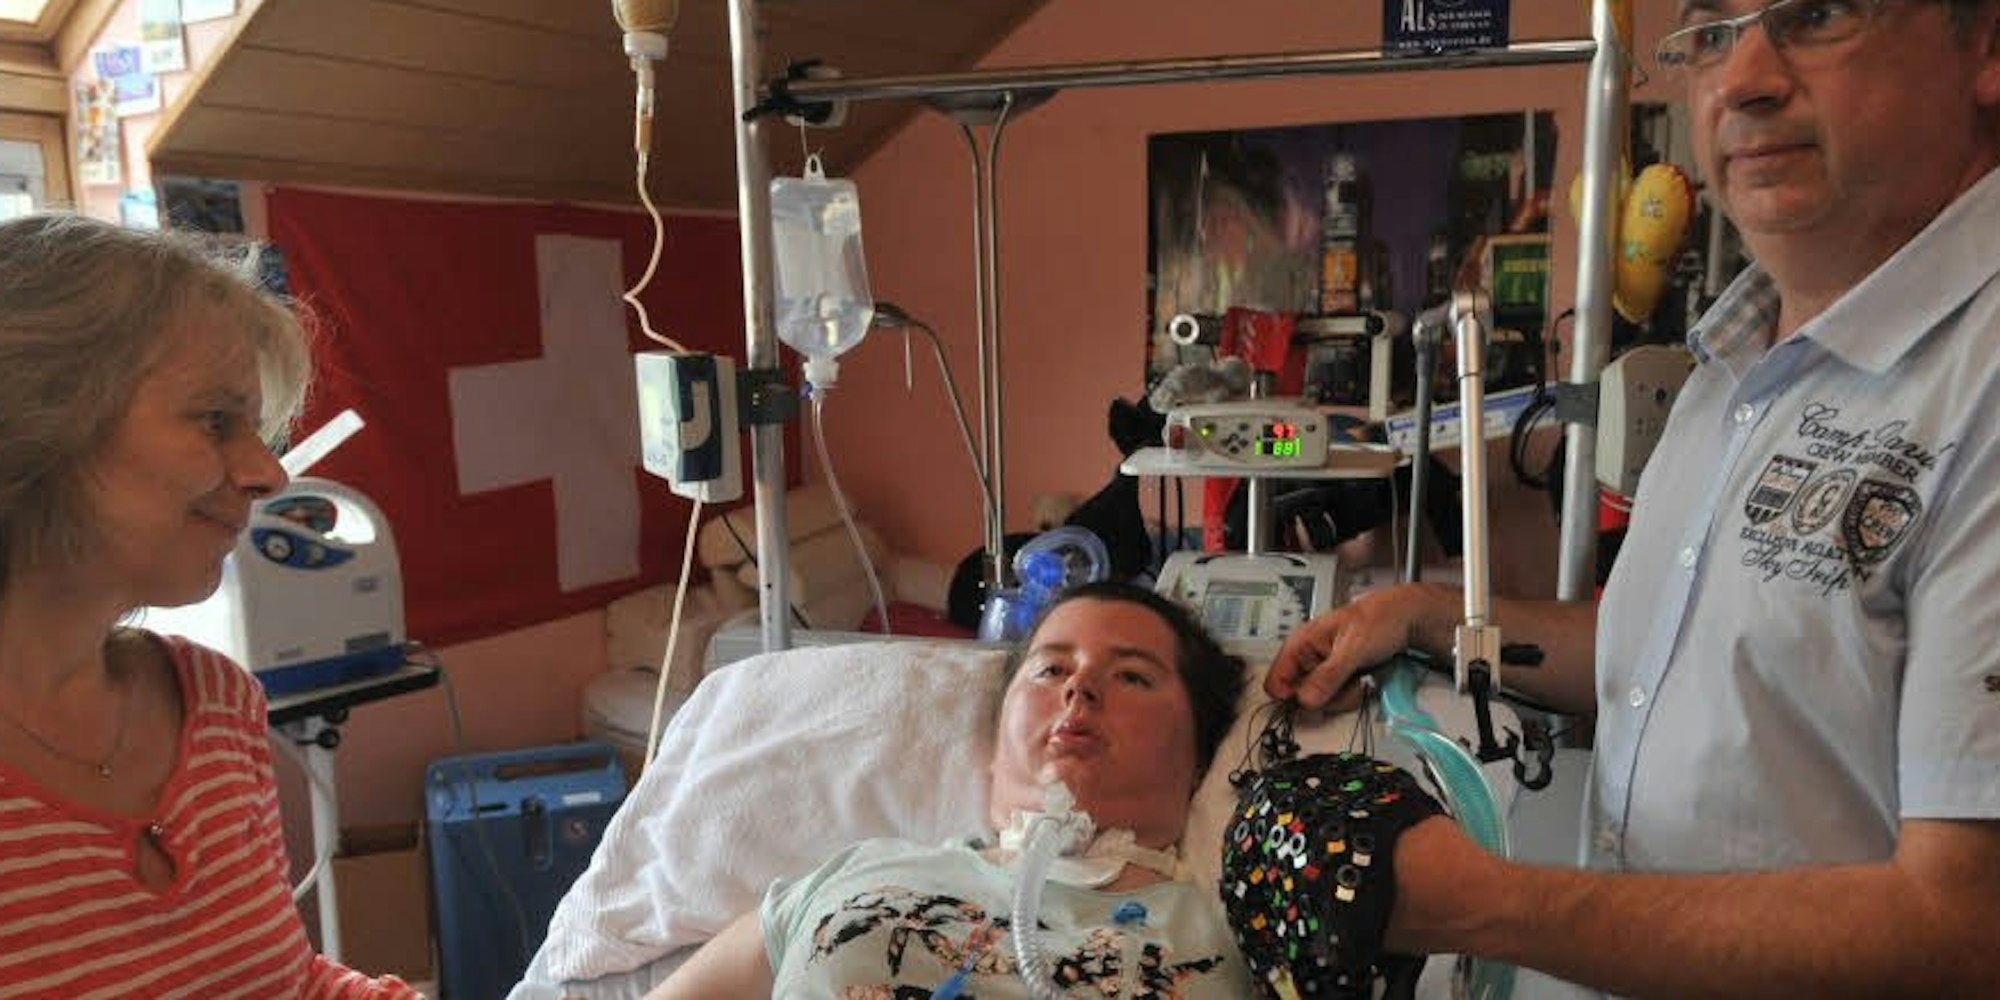 Kämpfen und hoffen: Die an ALS erkrankte Kerstin Wirth ist seit zwei Jahren an ihr Bett gefesselt und wird von ihren Eltern Margit und Jörg sowie Pflegern rund um die Uhr betreut.